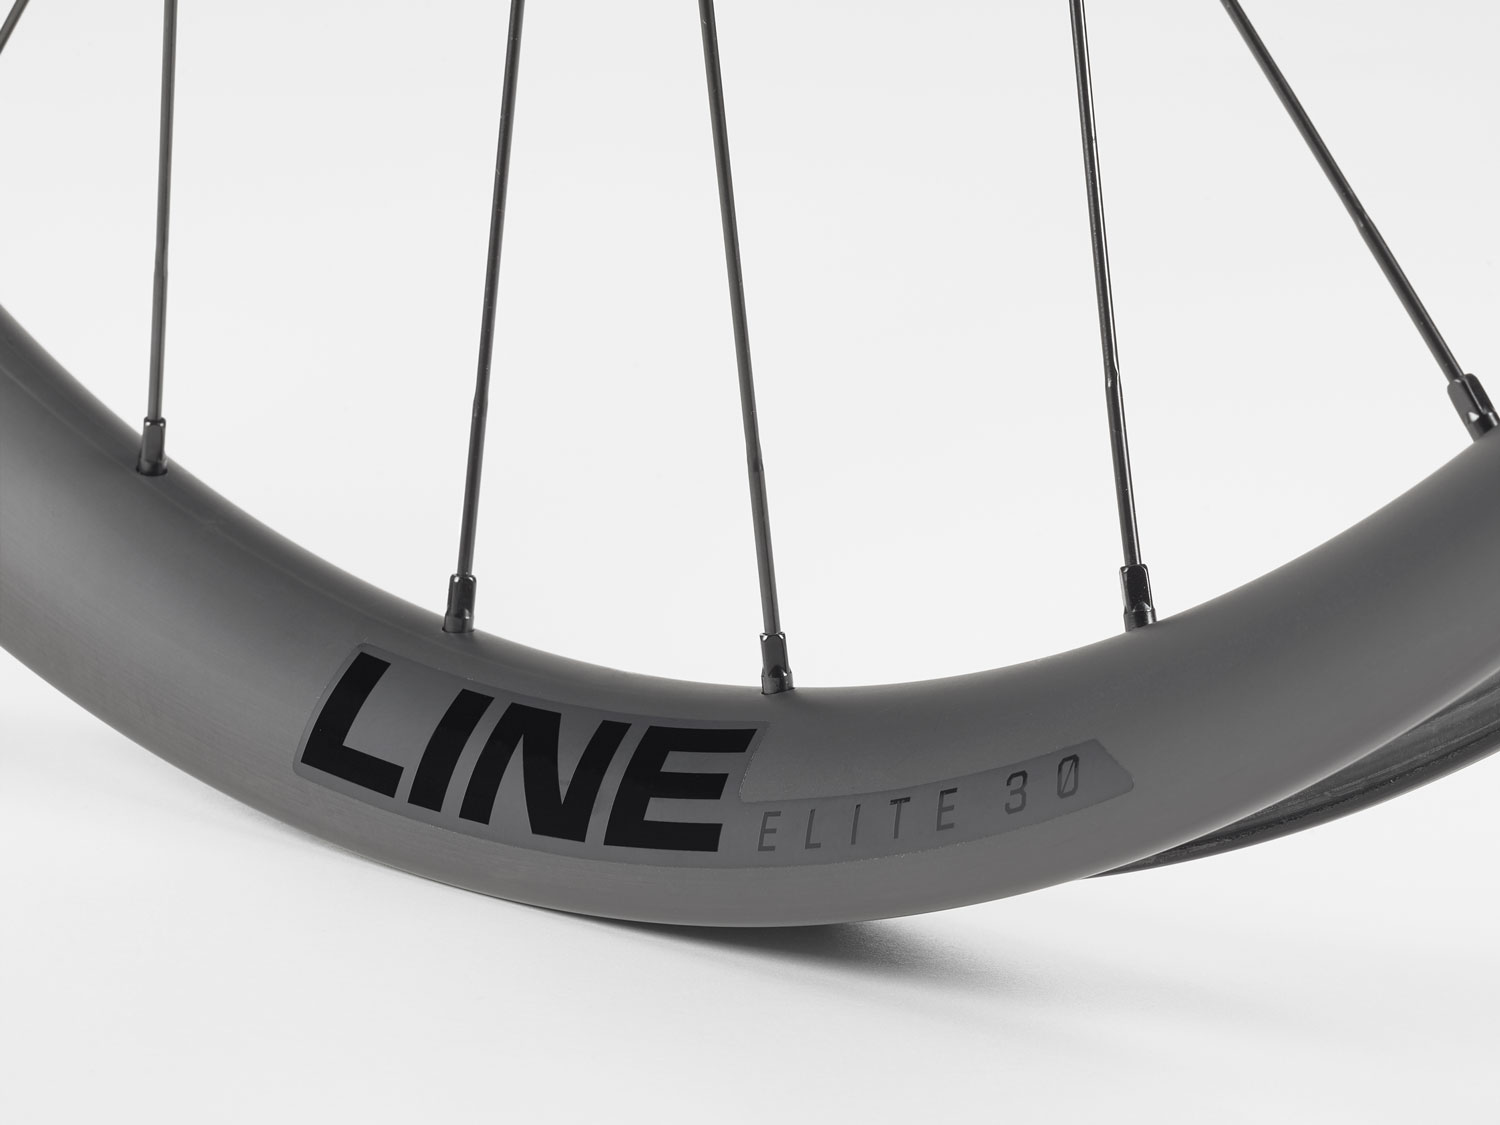 Bontrager Carbon Line Wheels - Line Elite 30